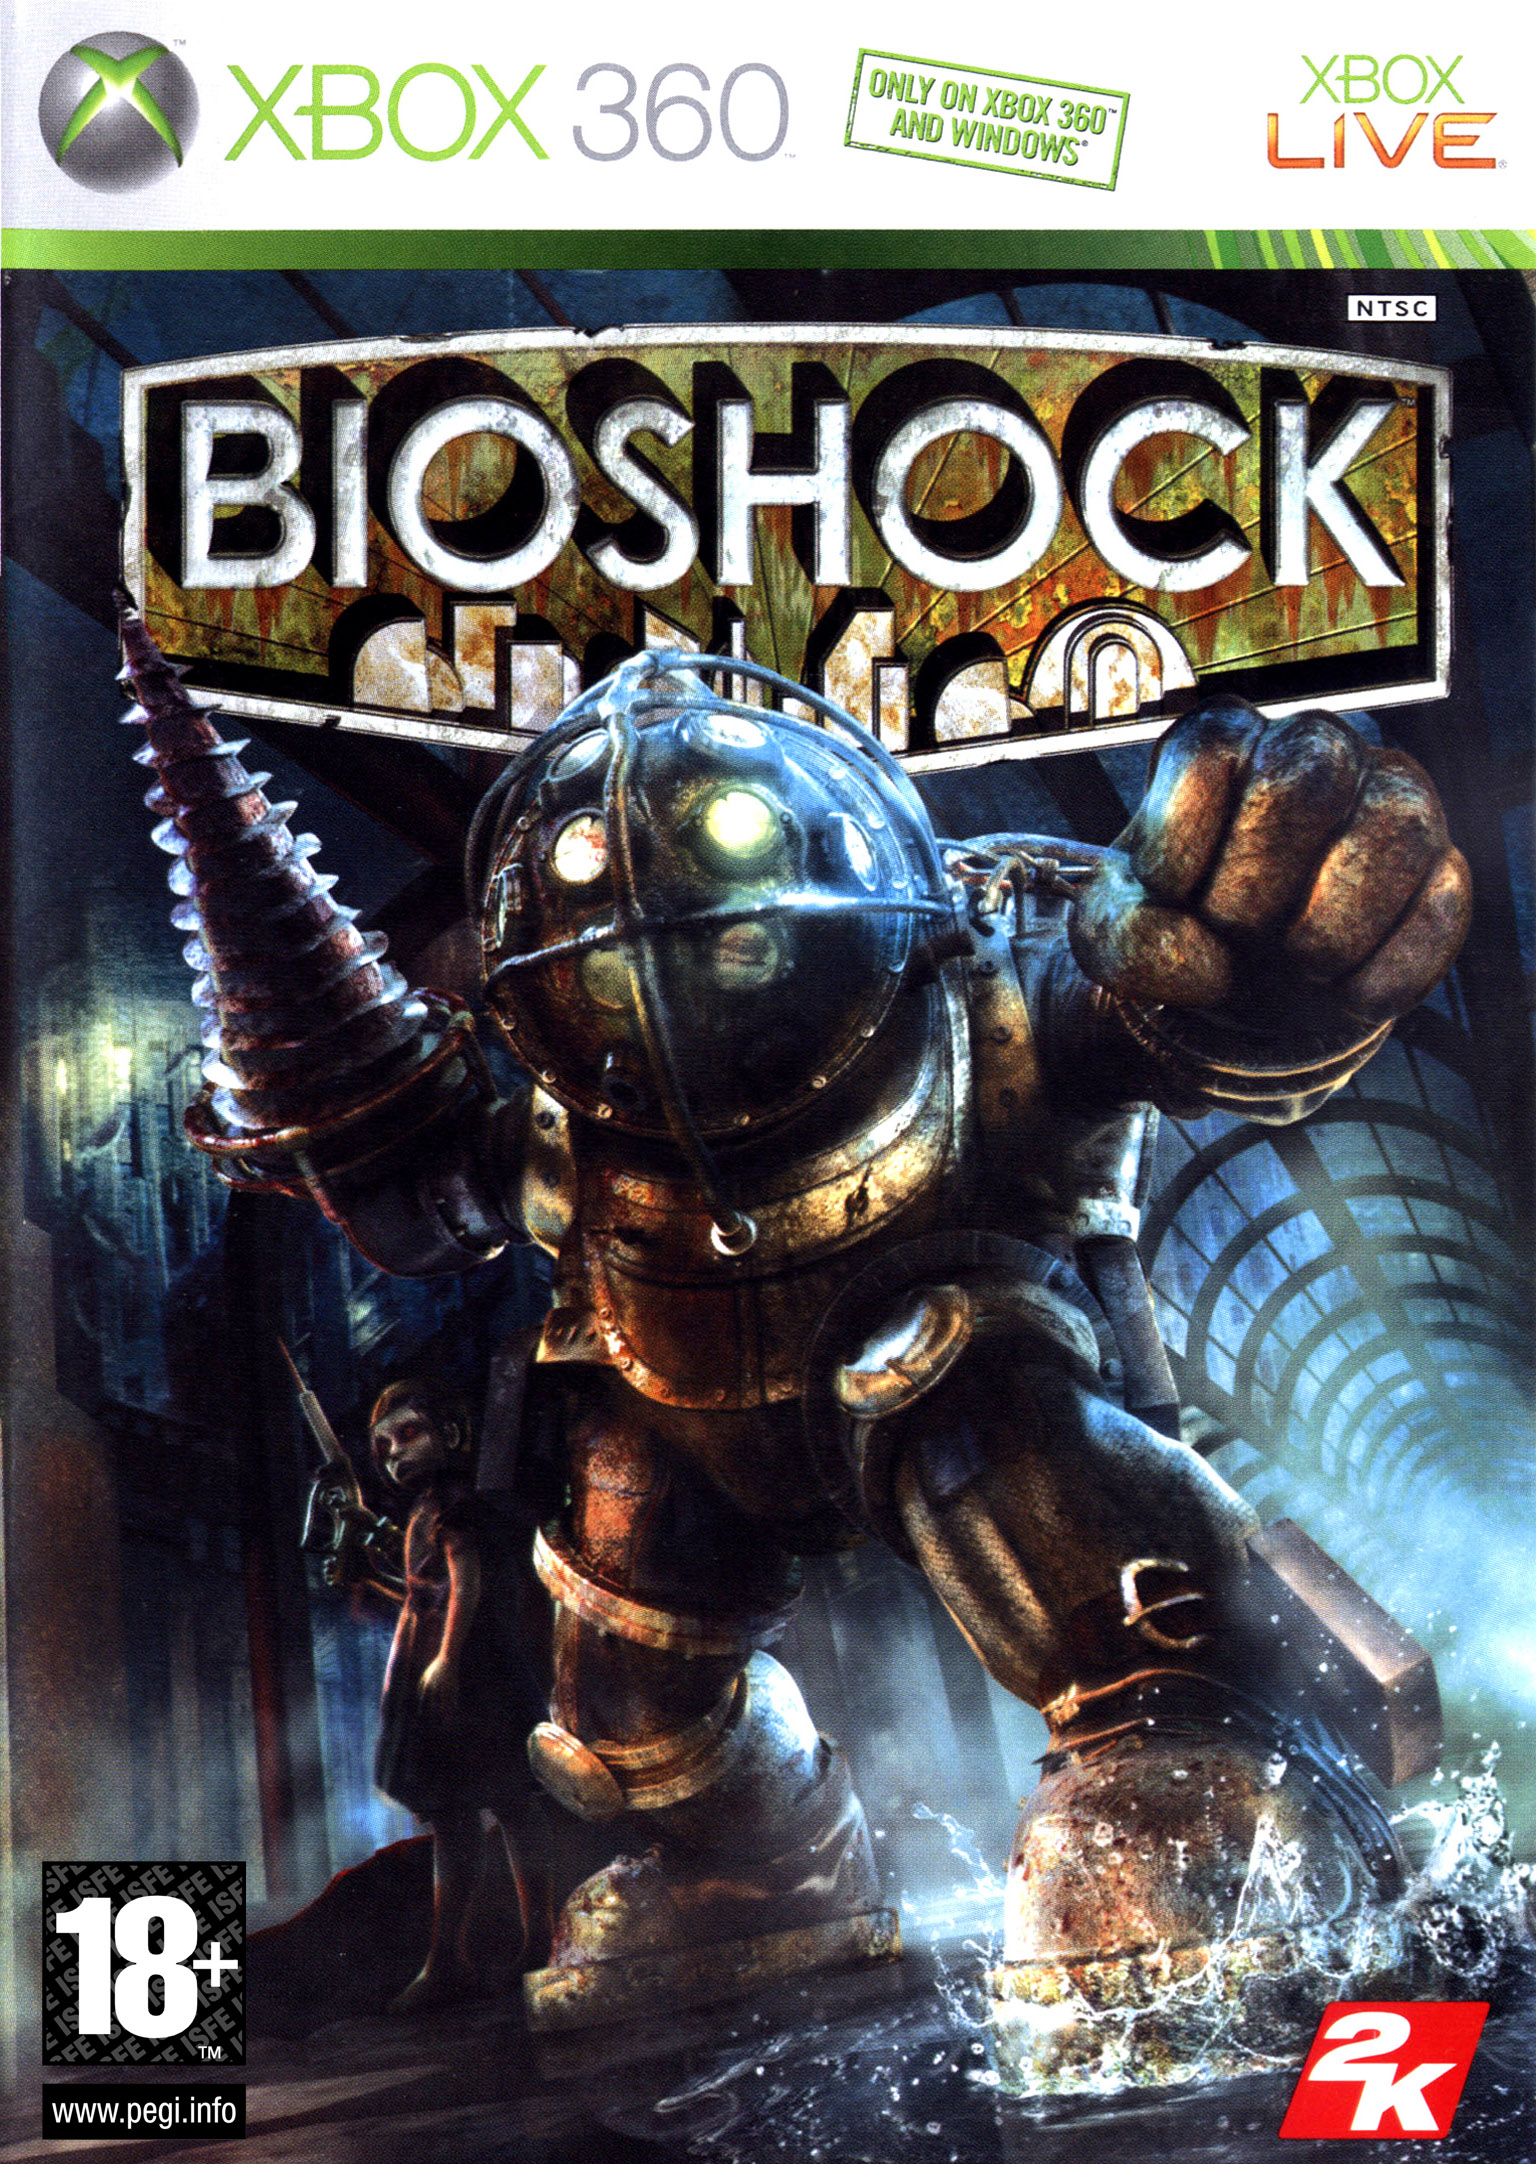 Bioshock, quand les bonnes idées tombent à l'eau